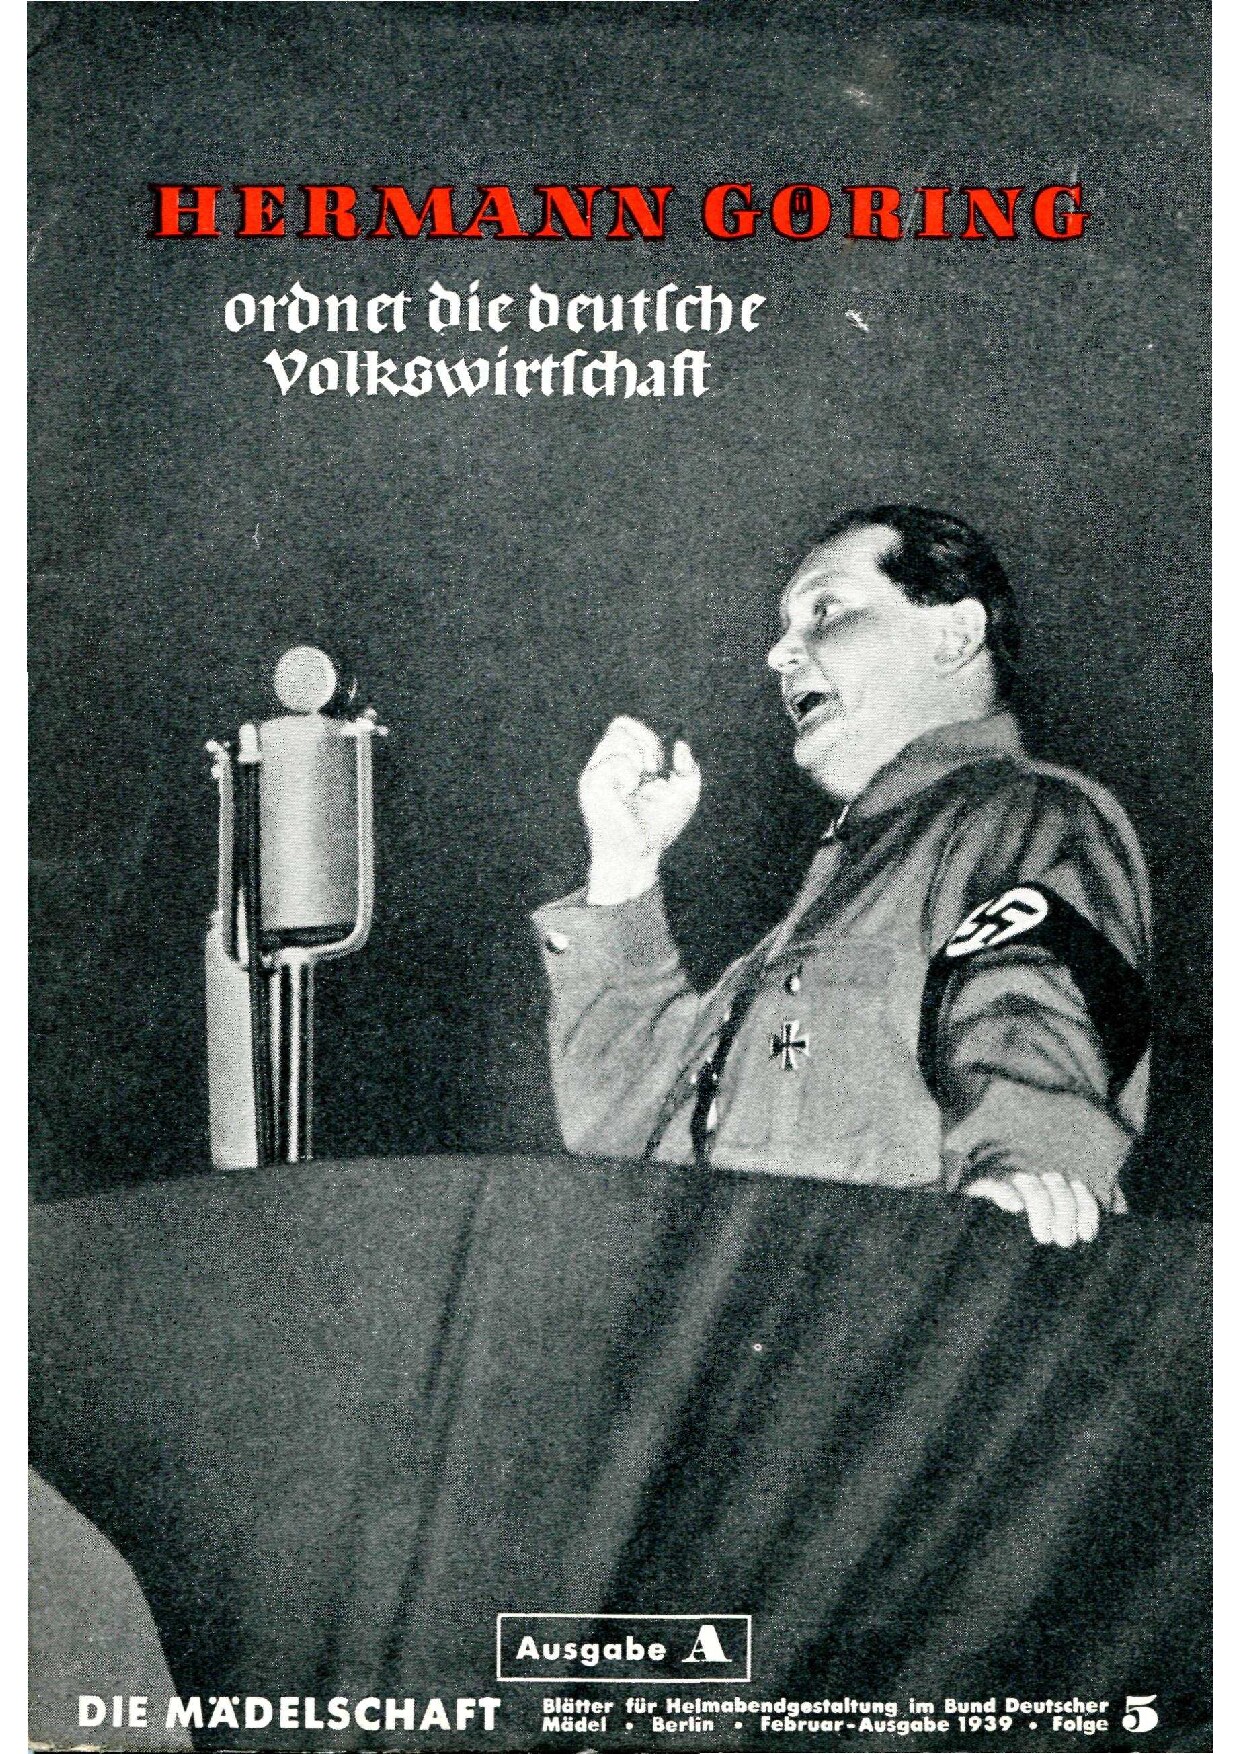 Die Mädelschaft - Februar 1939 - Hermann Göring ordnet die deutsche Volkswirtschaft